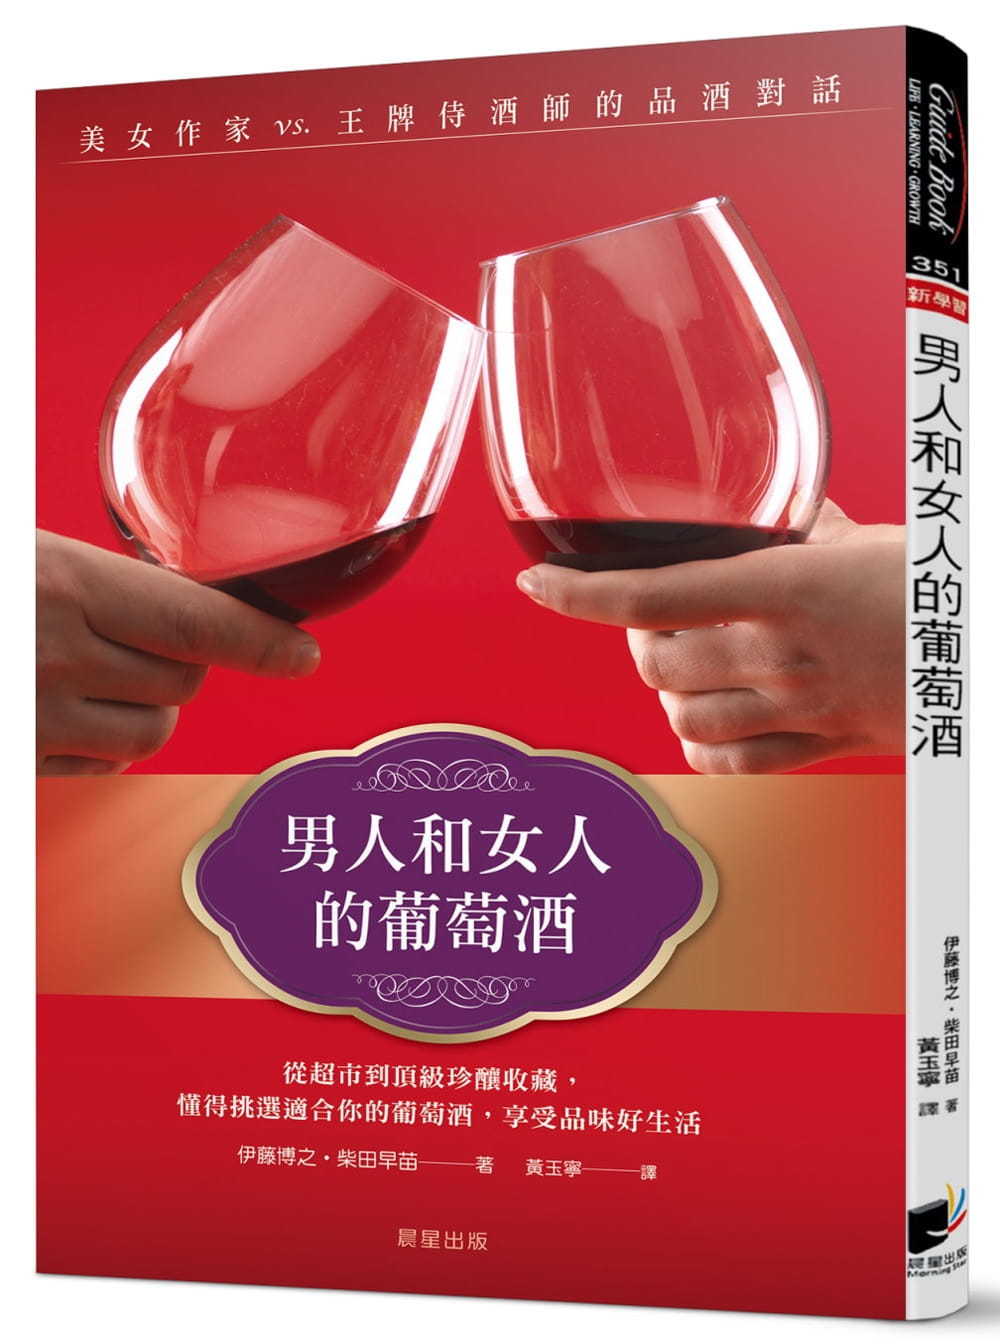 现货 伊藤博之男人和女人的葡萄酒美女作家vs.王牌侍酒师的品酒对话晨星 原版进口书 饮食